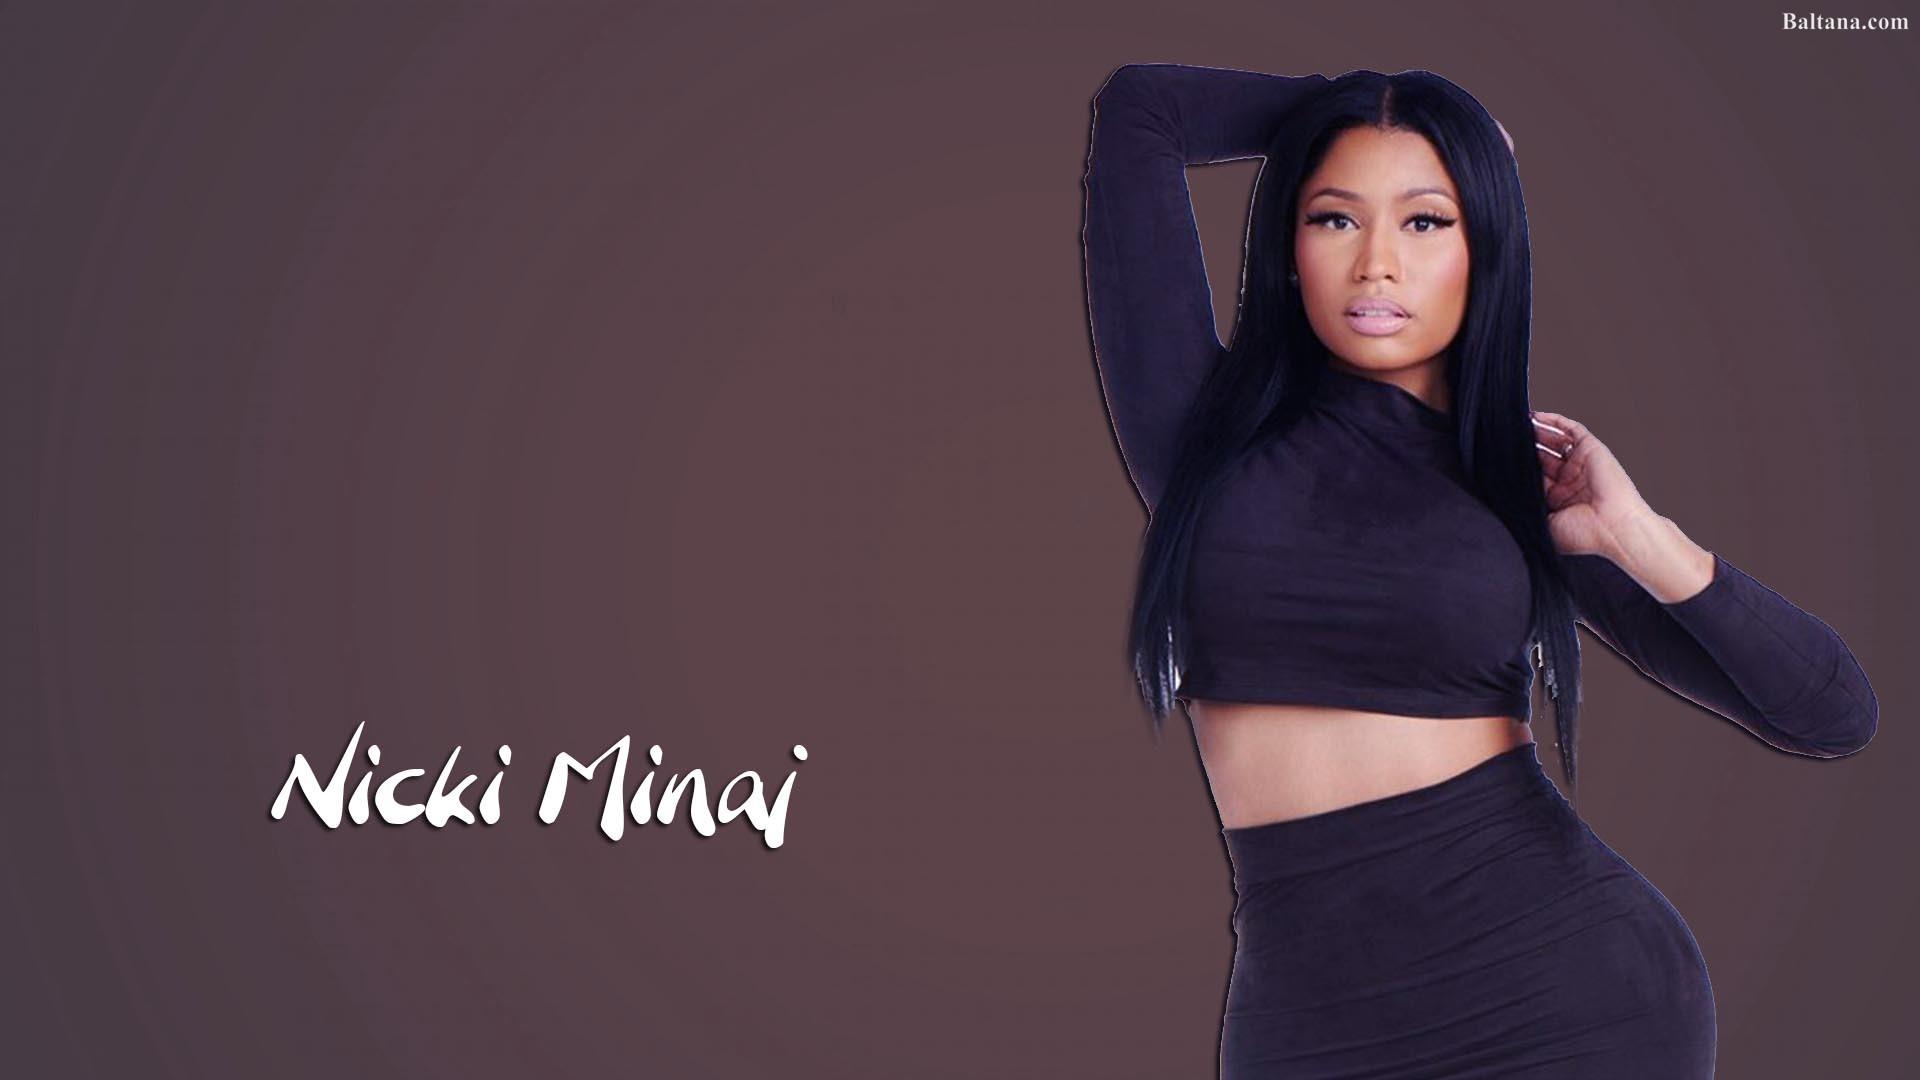 Nicki Minaj Background Wallpaper 30802